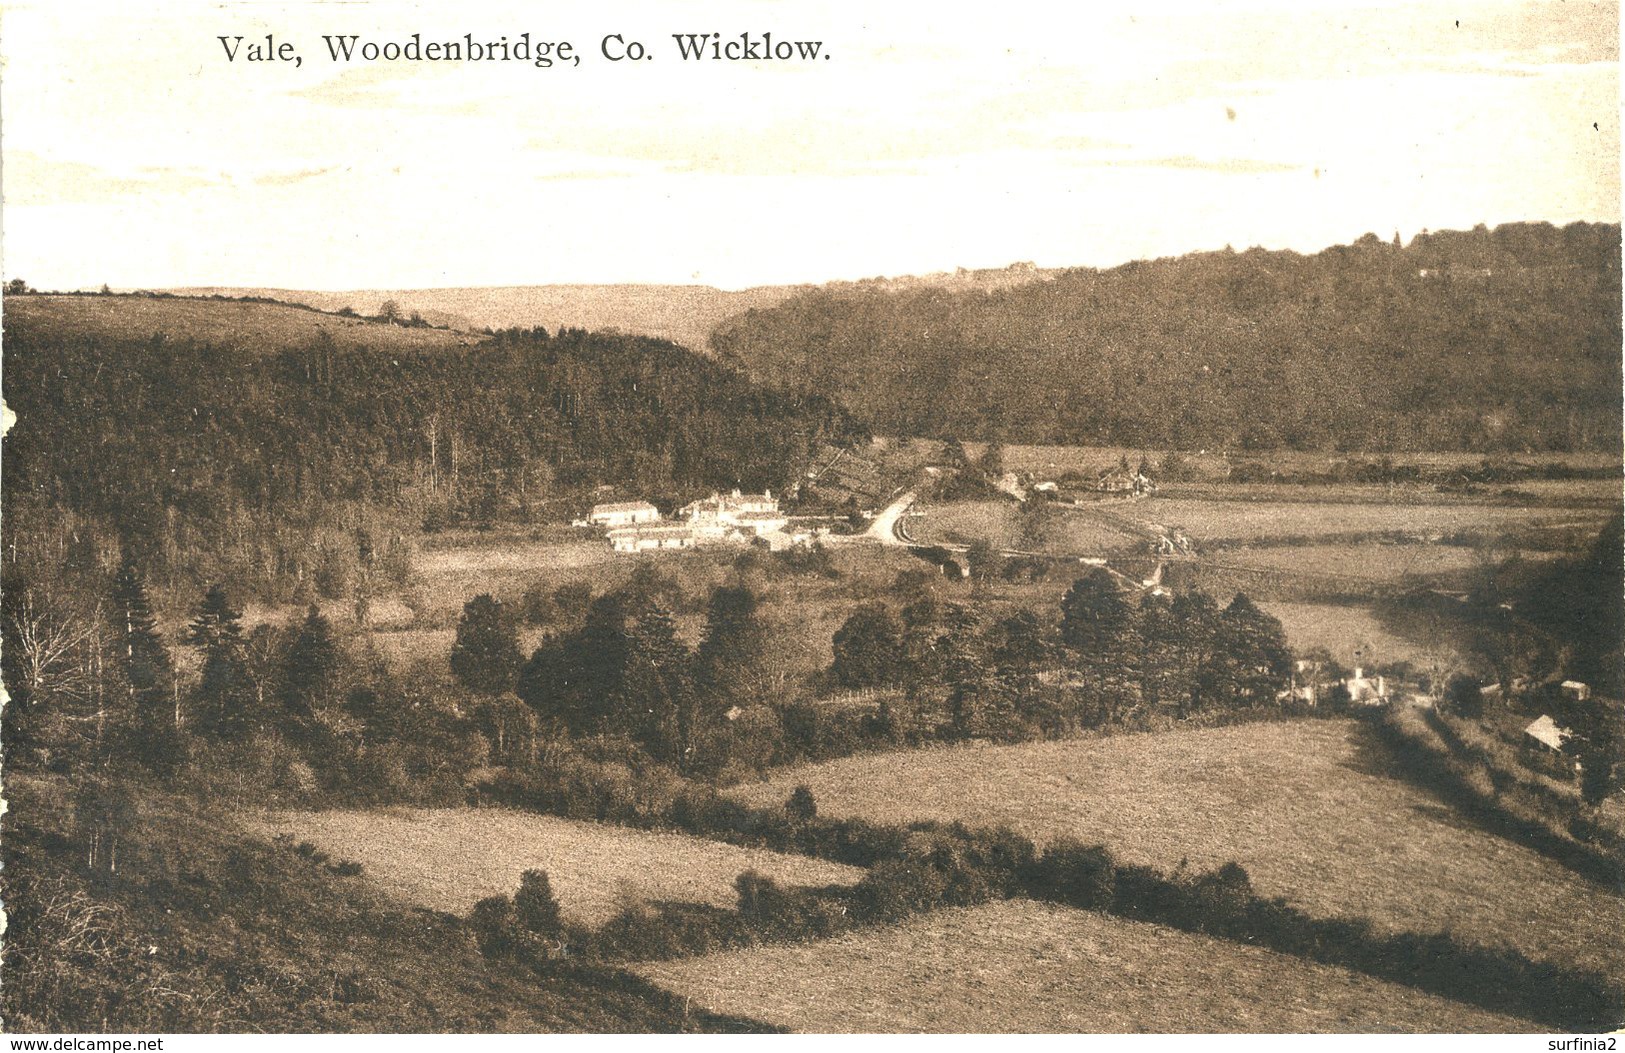 Co WICKLOW - VALE, WOODENBRIDGE   I331 - Wicklow